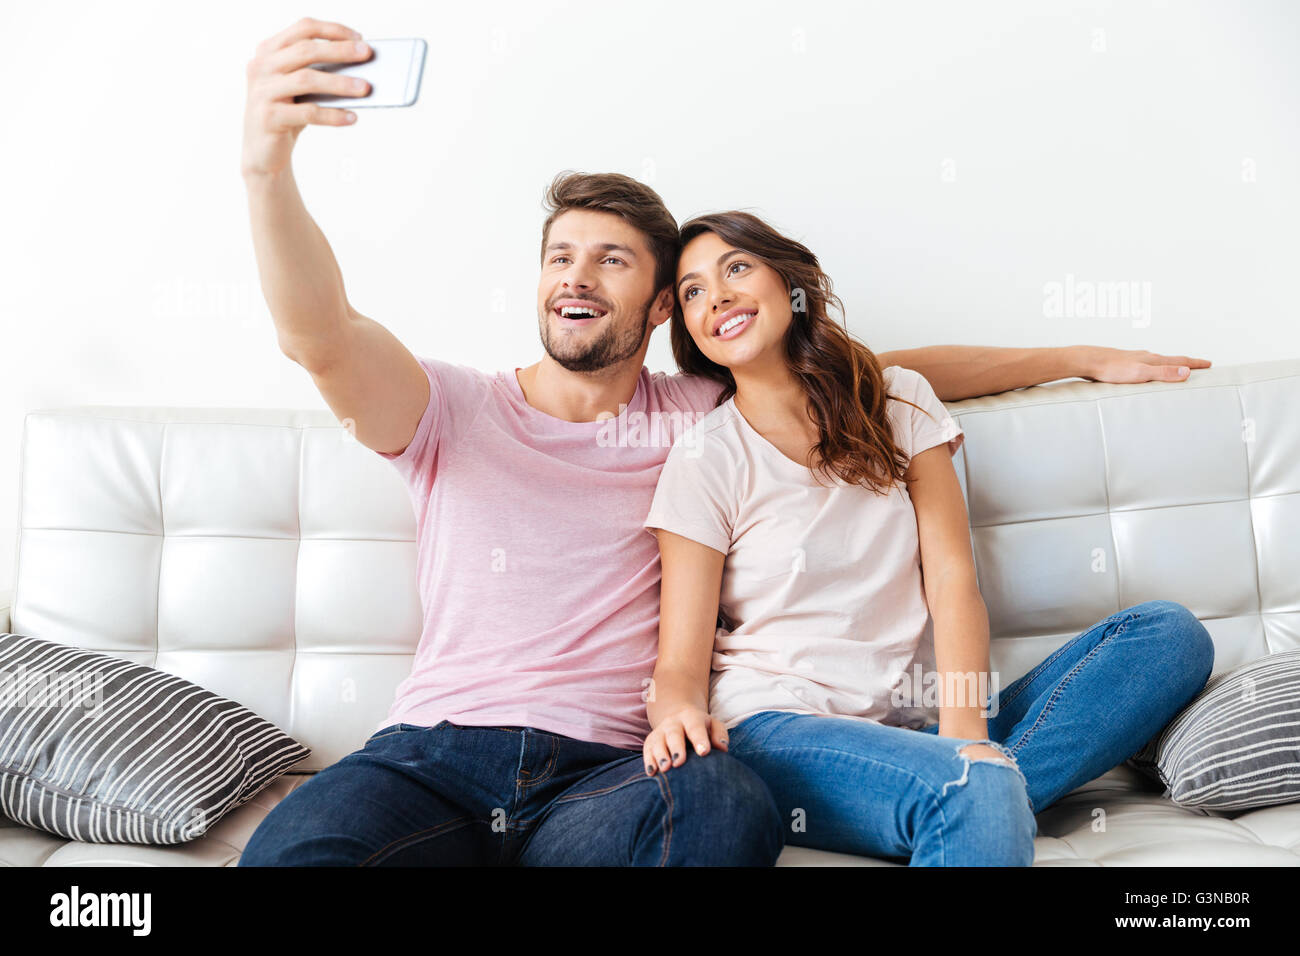 Beau jeune couple fait l'utilisation d'un smartphone selfies smiling while sitting on sofa isolé sur fond blanc Banque D'Images